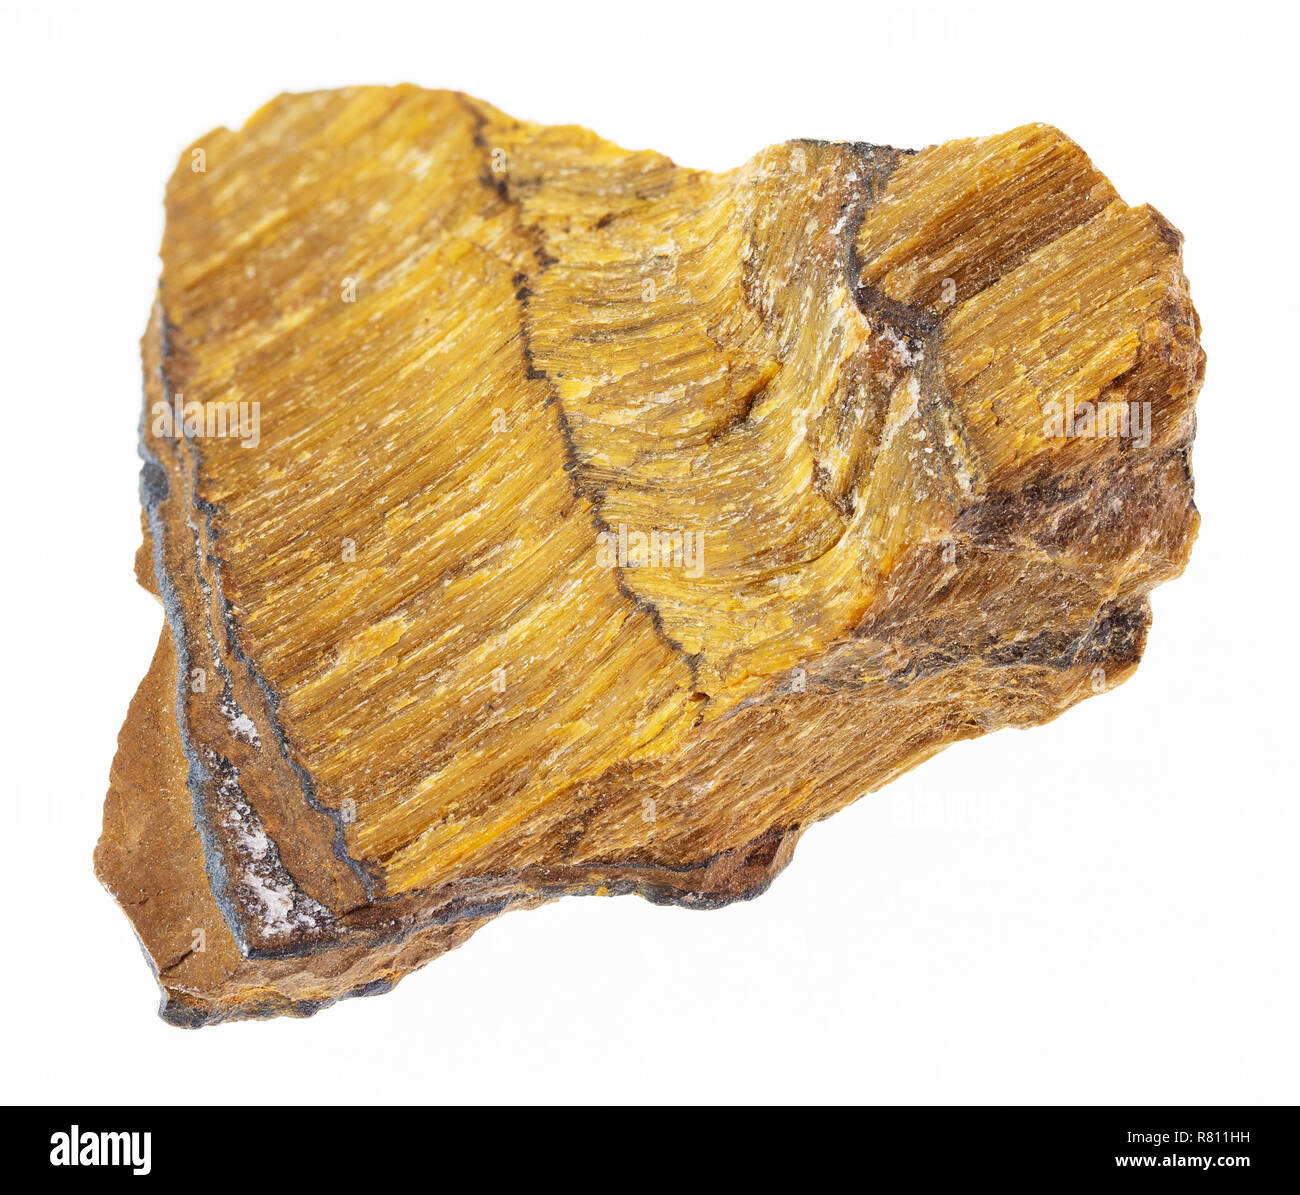 La fotografia macro di naturale minerale da collezione geologica - ruvida occhio di tigre (occhio di tigre) pietra su sfondo bianco Foto Stock